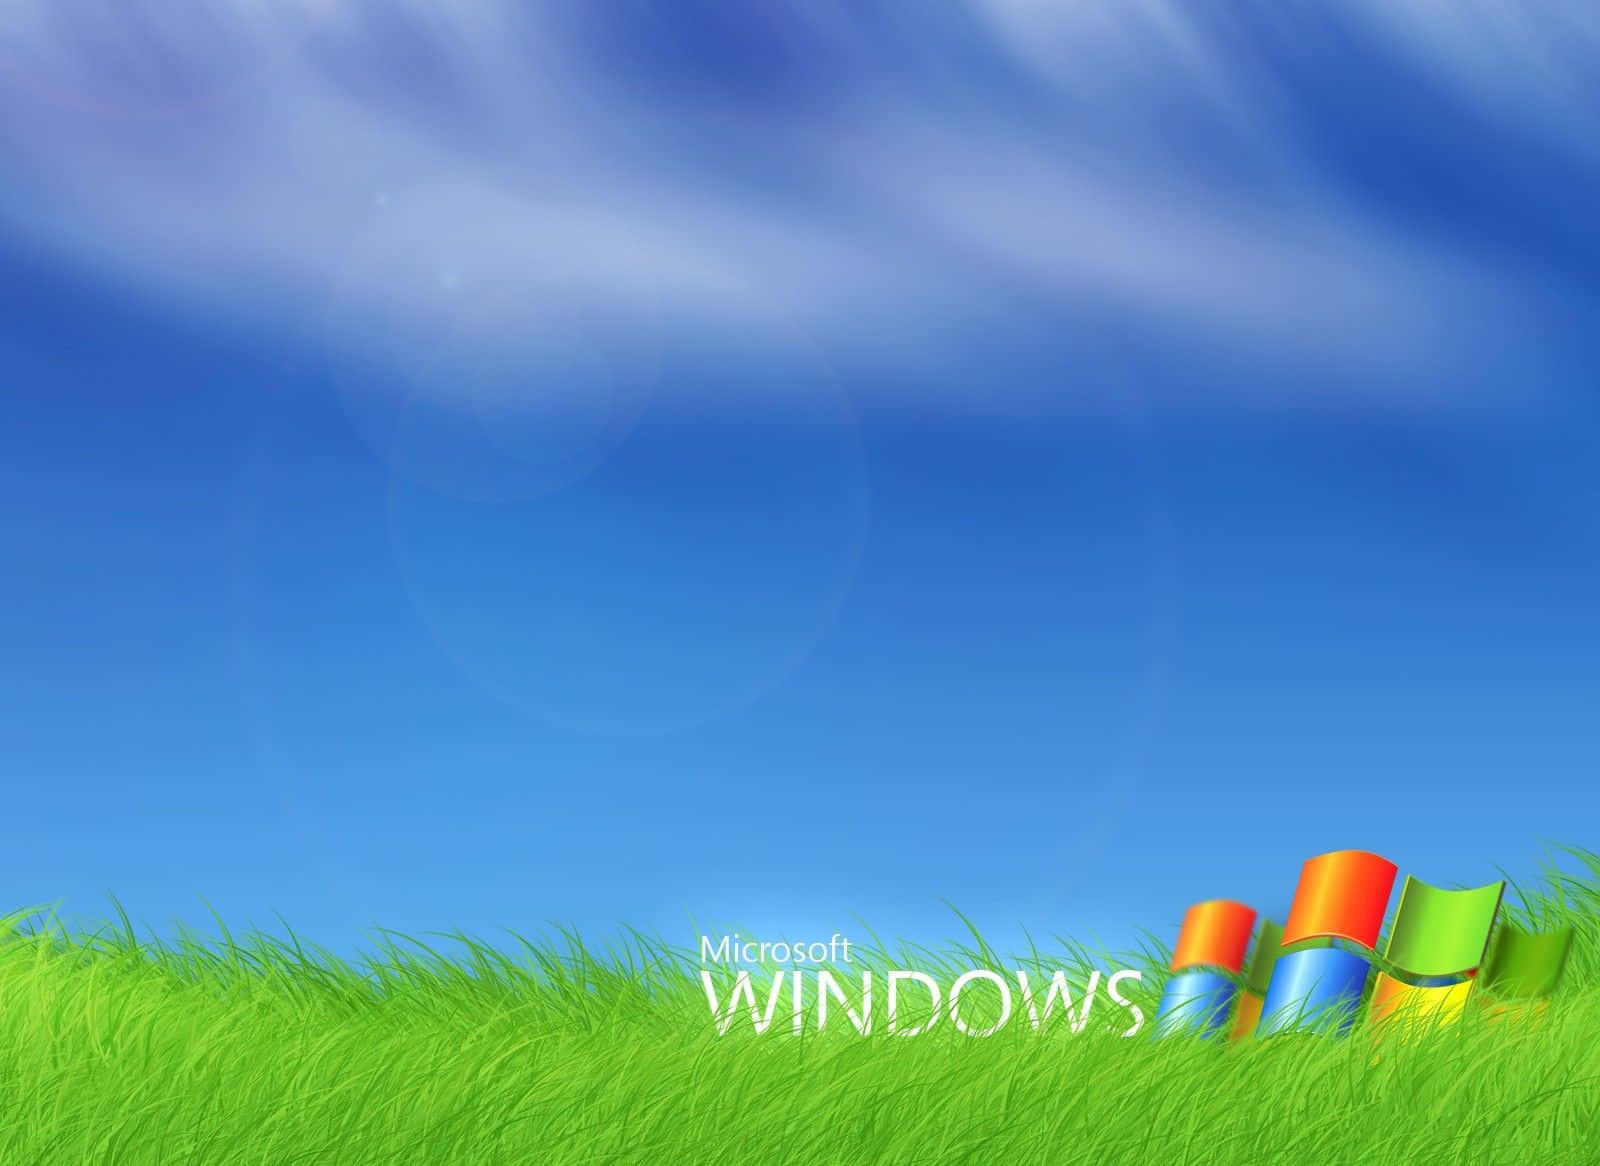 Microsoft Windows XP Logo Wallpaper